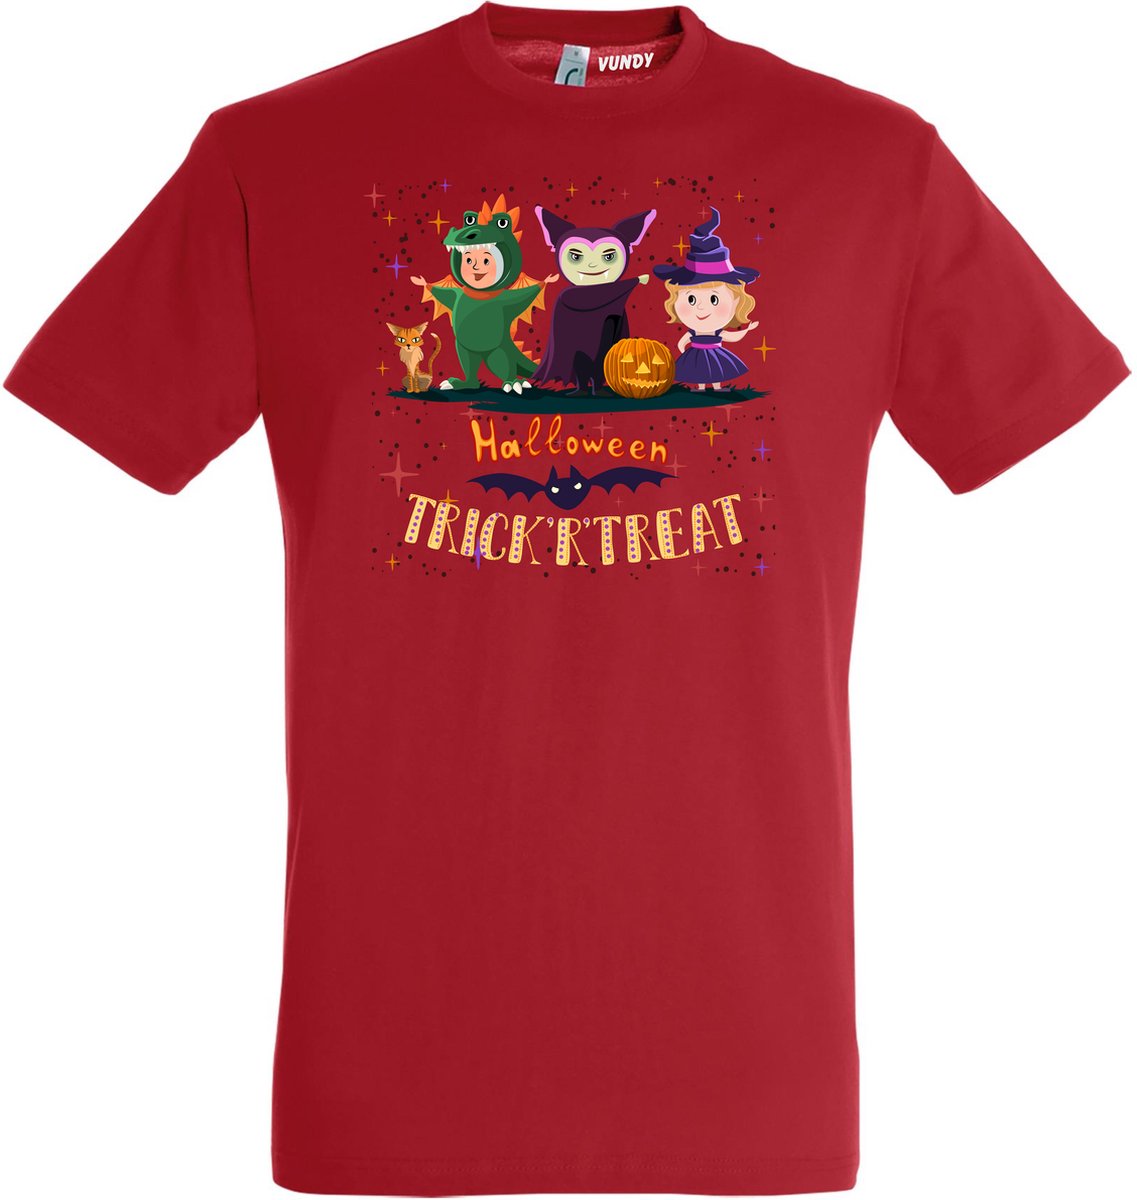 T-shirt Halloween TrickrTreat | Halloween kostuum kind dames heren | verkleedkleren meisje jongen | Rood | maat XL